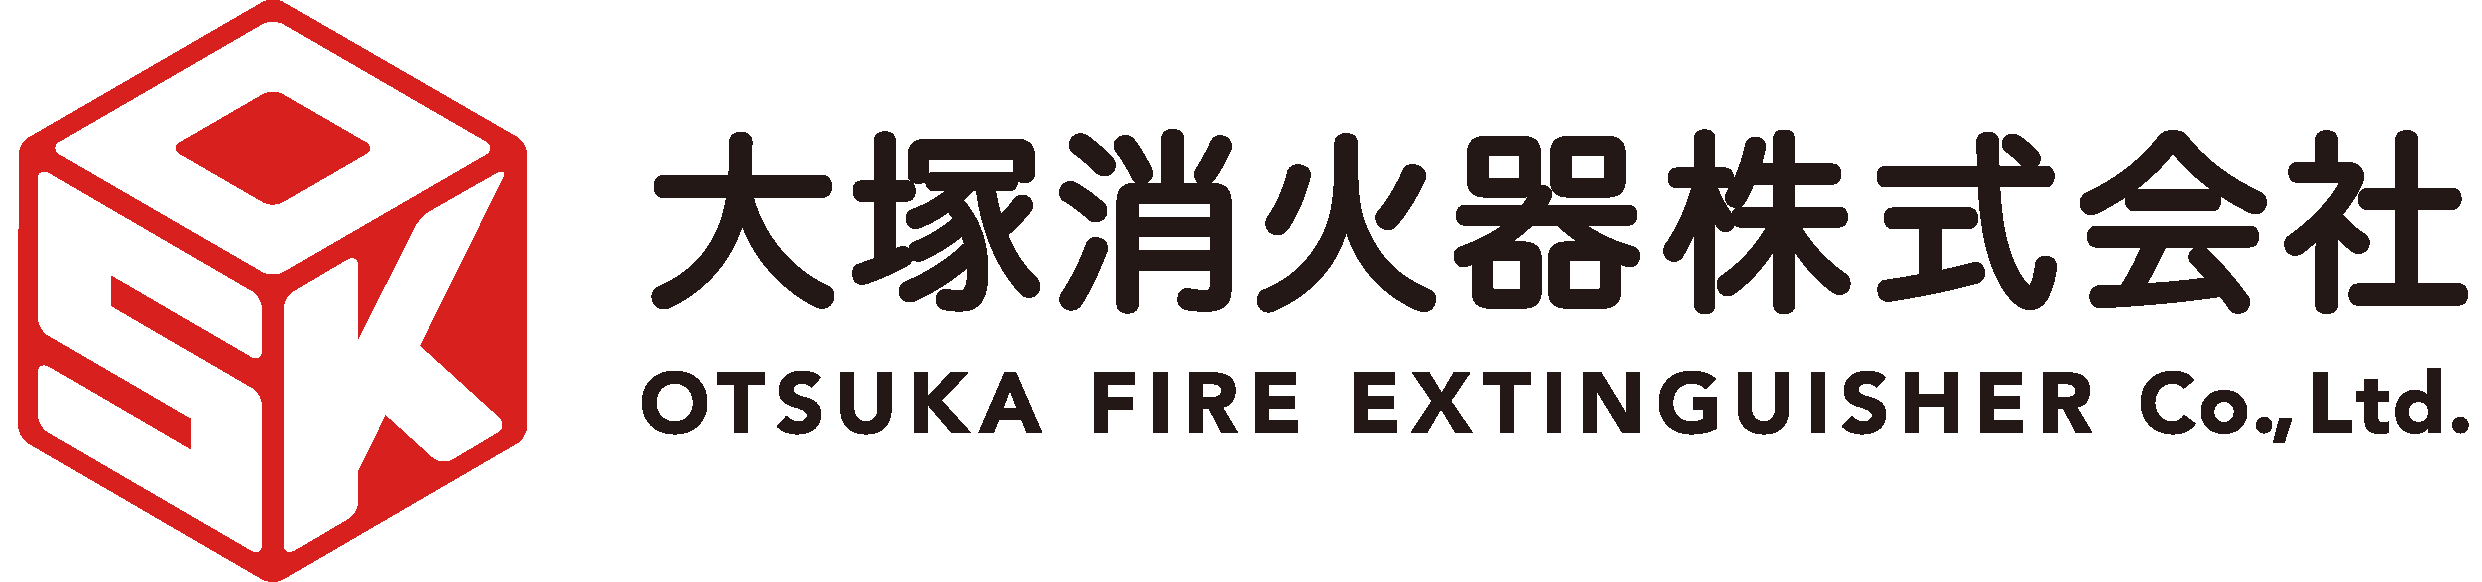 大塚消火器株式会社